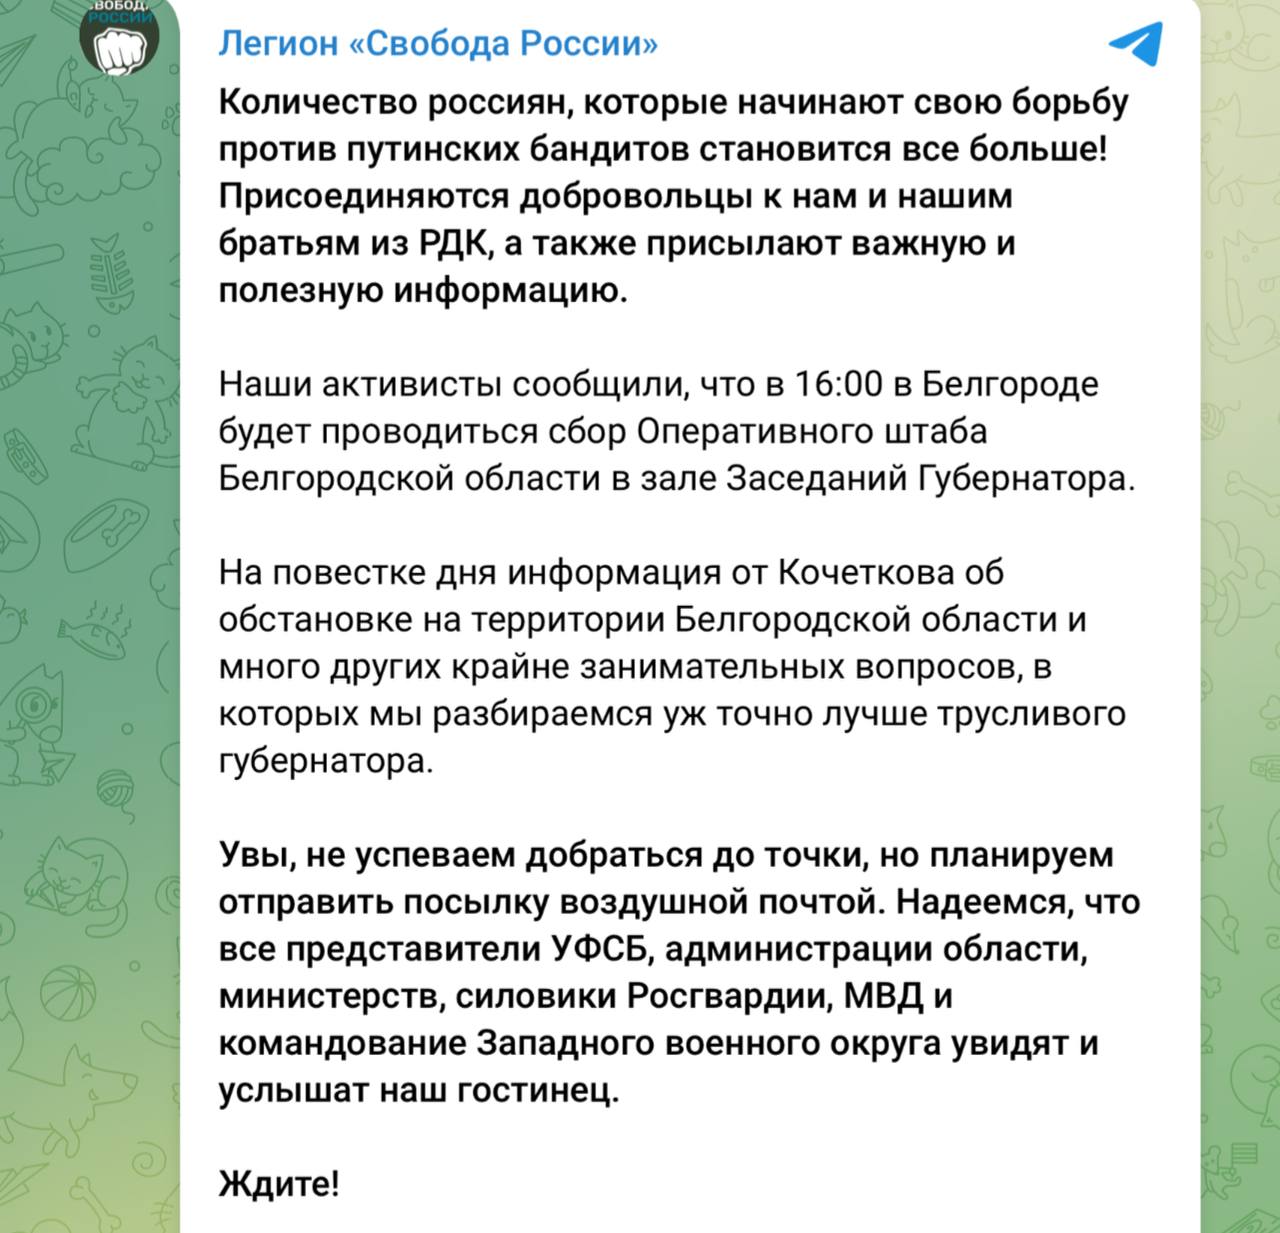 «Ждите!»: Легион «Свобода росии» анонсировал посылку воздушной почтой для Белгородского оперативного штаба, который соберется сегодня в 16:00